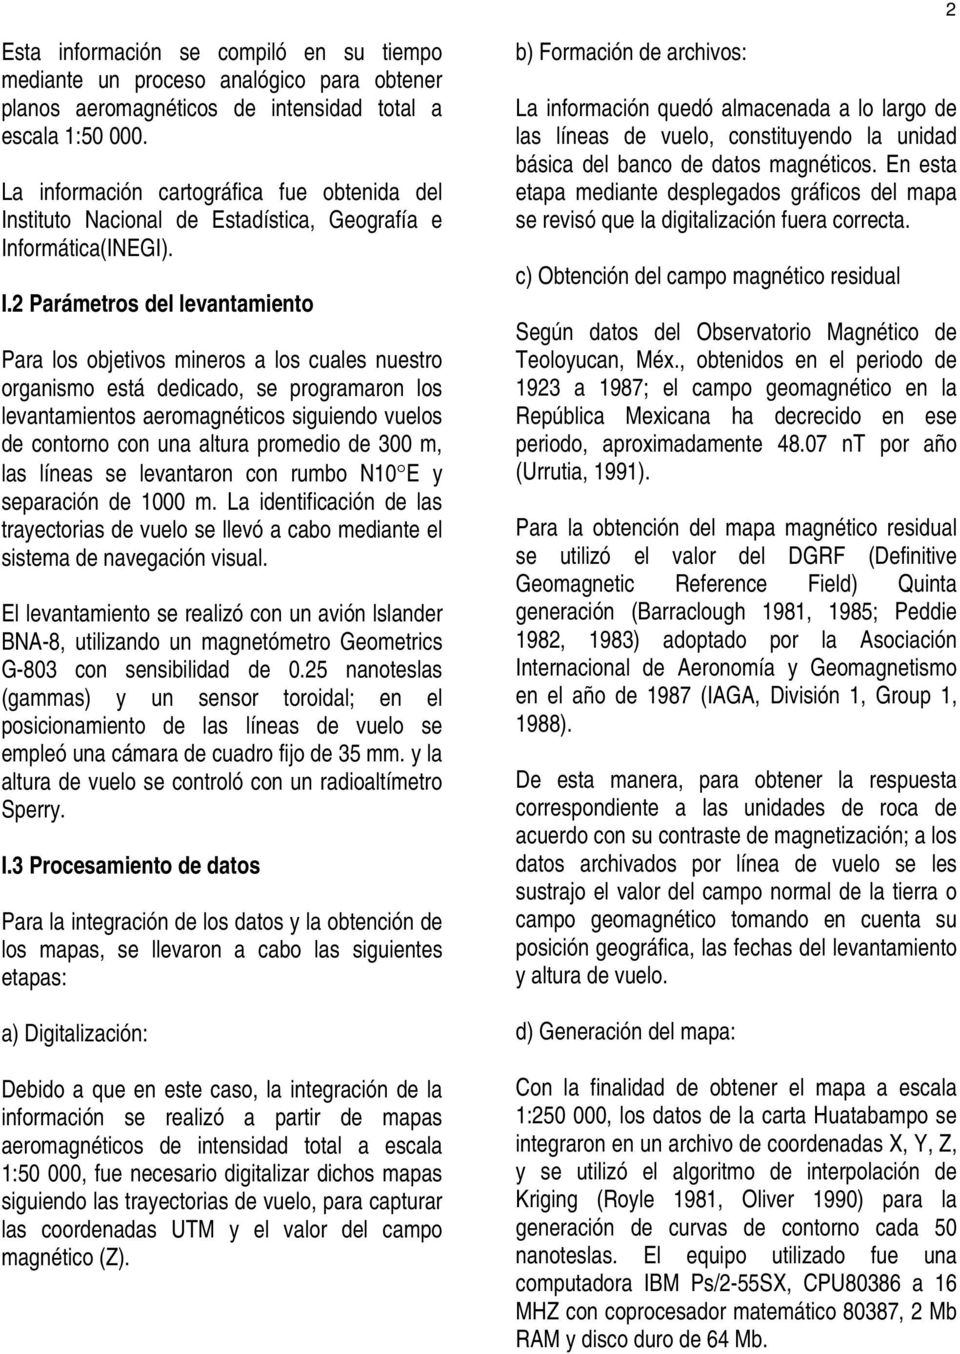 stituto Nacional de Estadística, Geografía e In